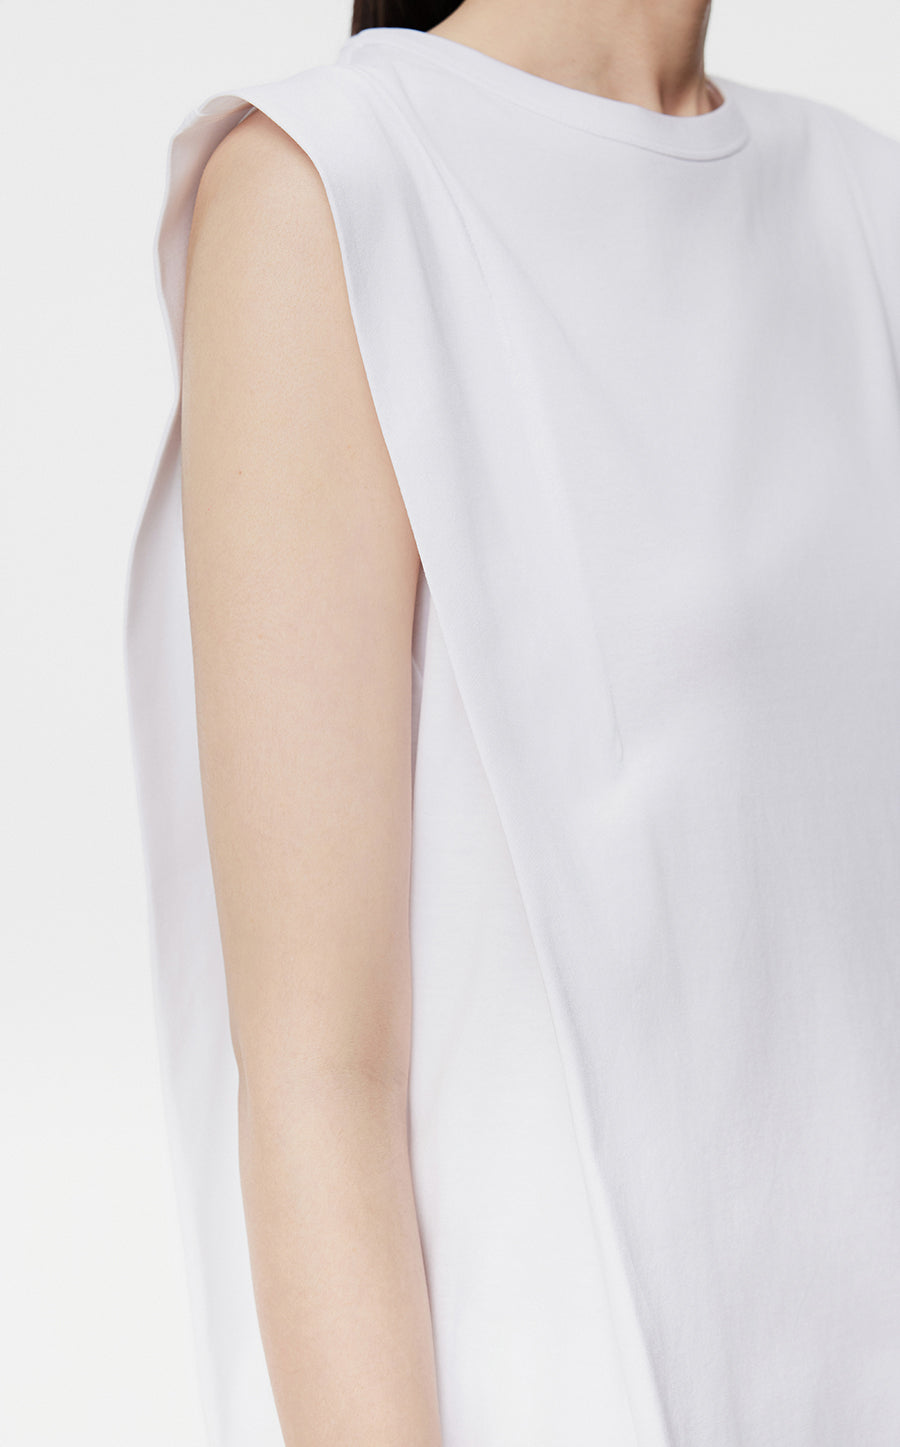 Dresses/JNBY T-shaped Side Slit Sleeveless Dresses